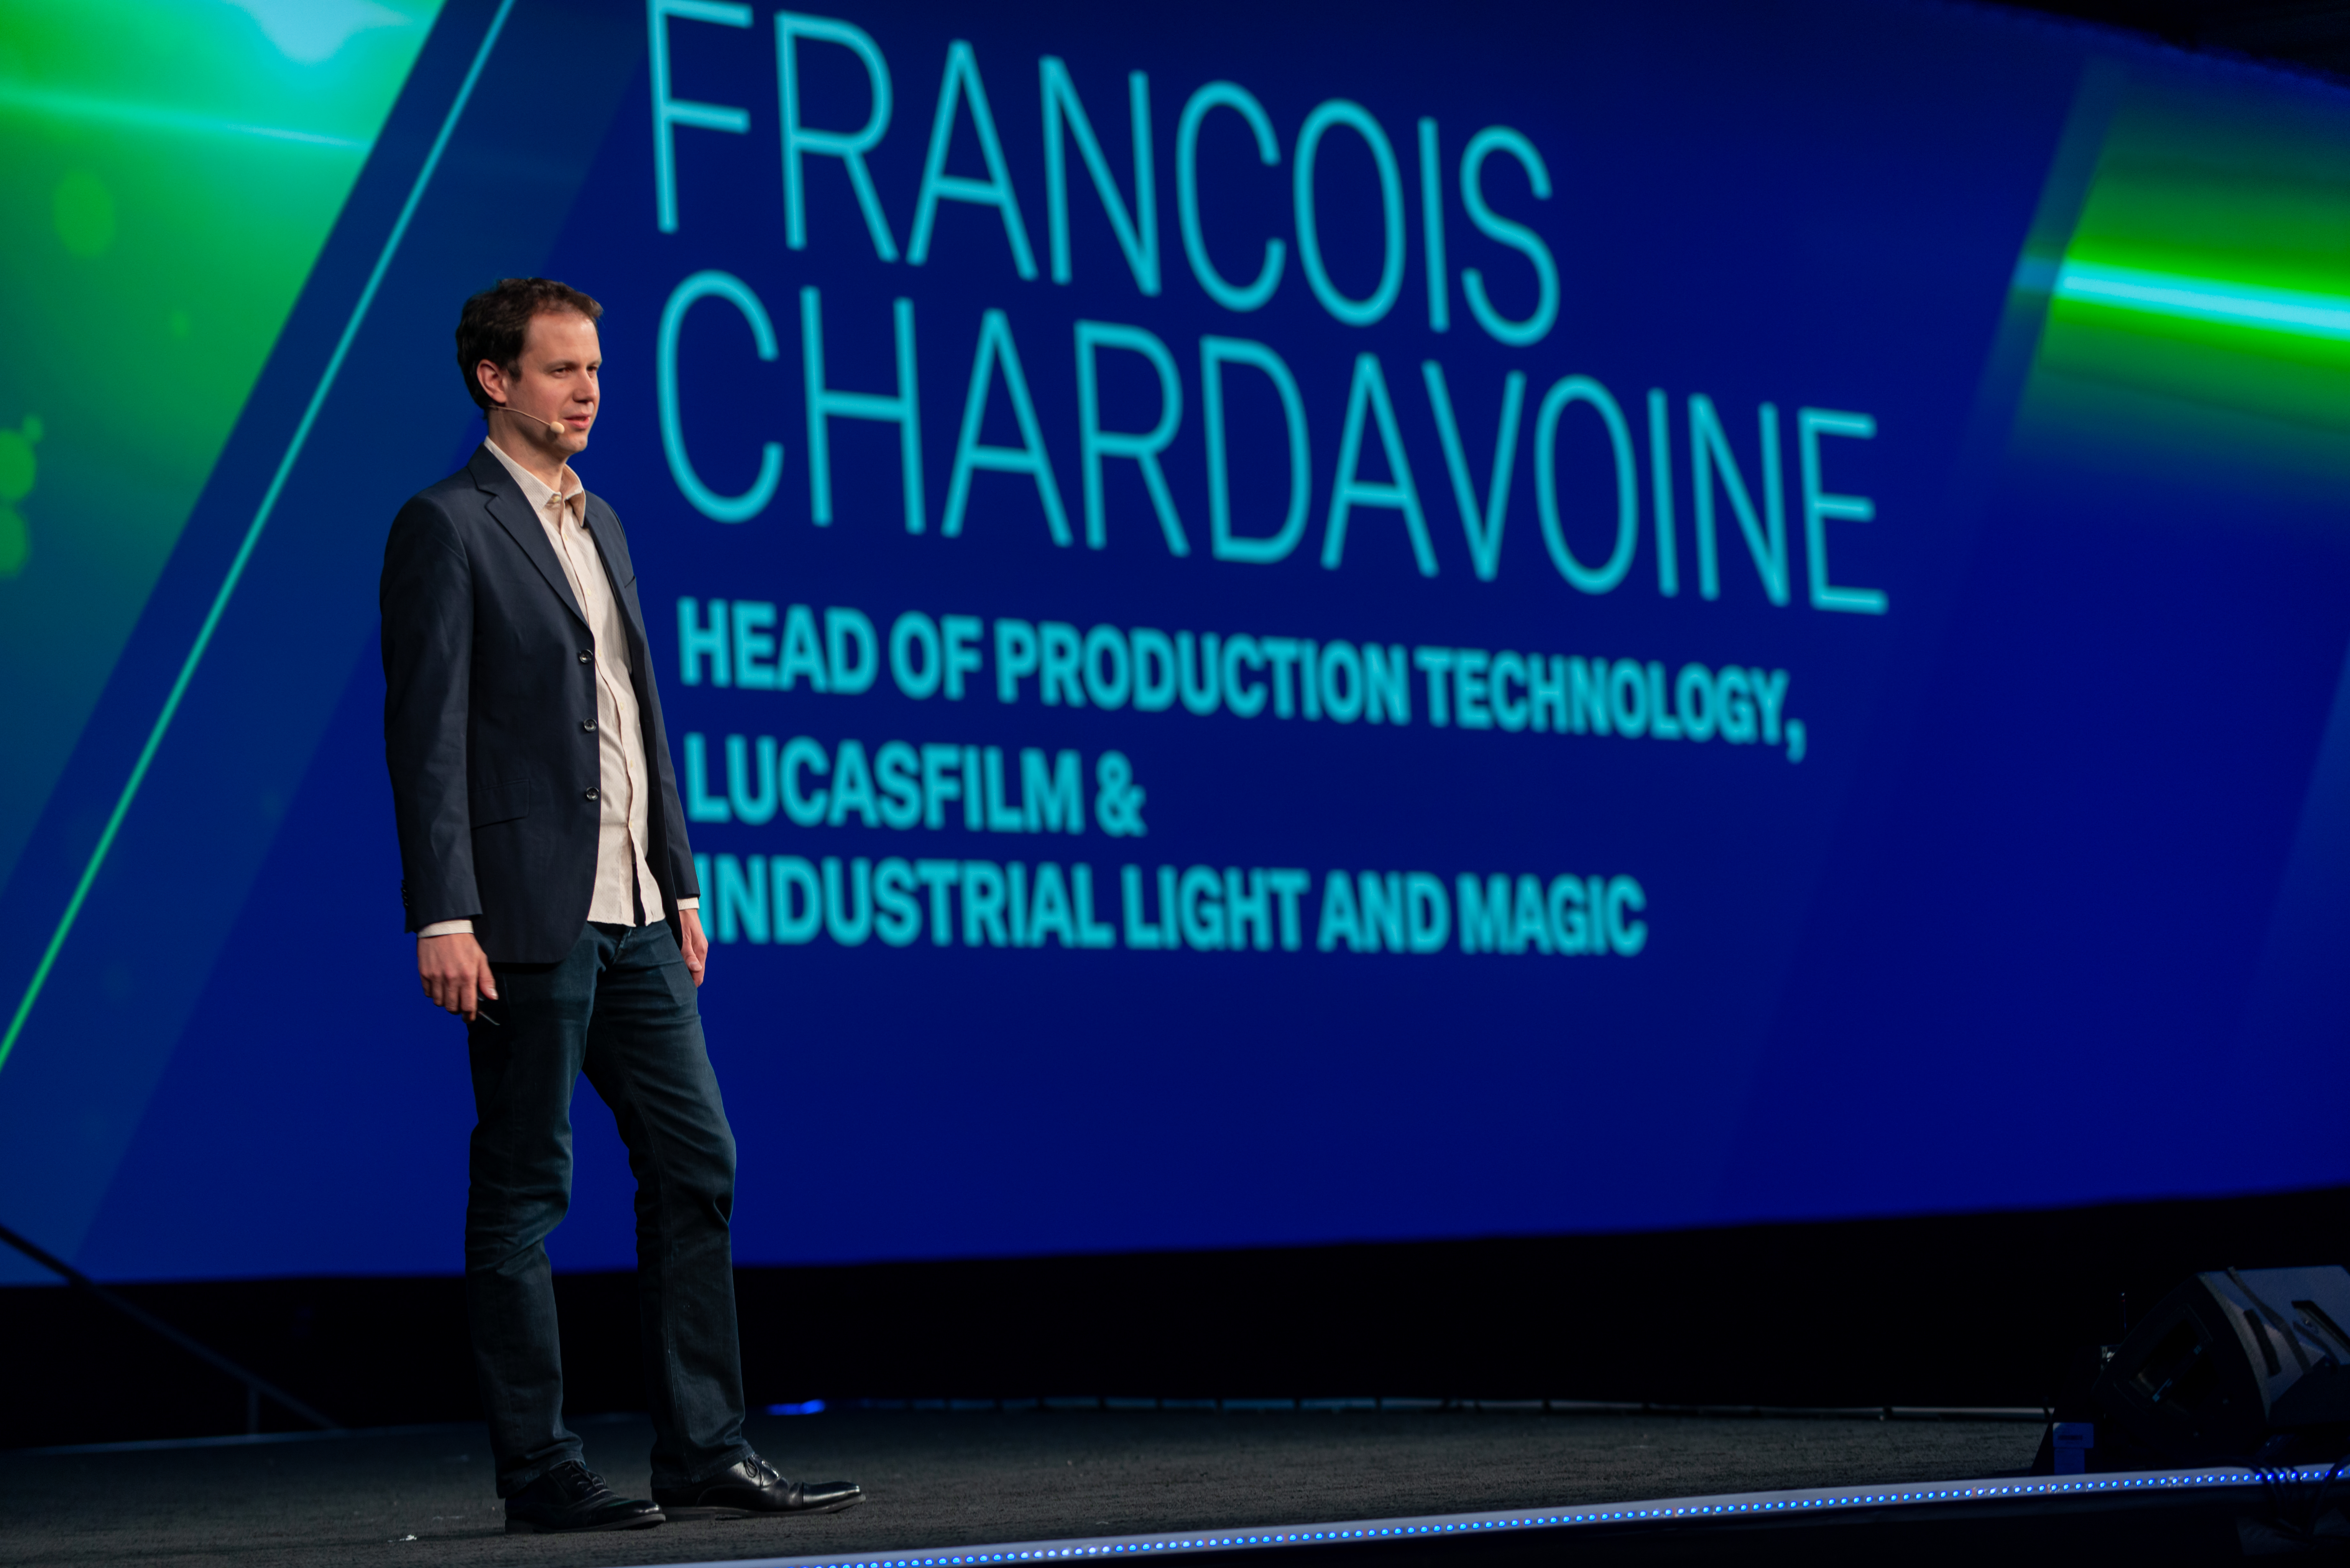           ラスベガスで開催されたHxGN Live 2019でのFrancois Chardavoineの発表内容